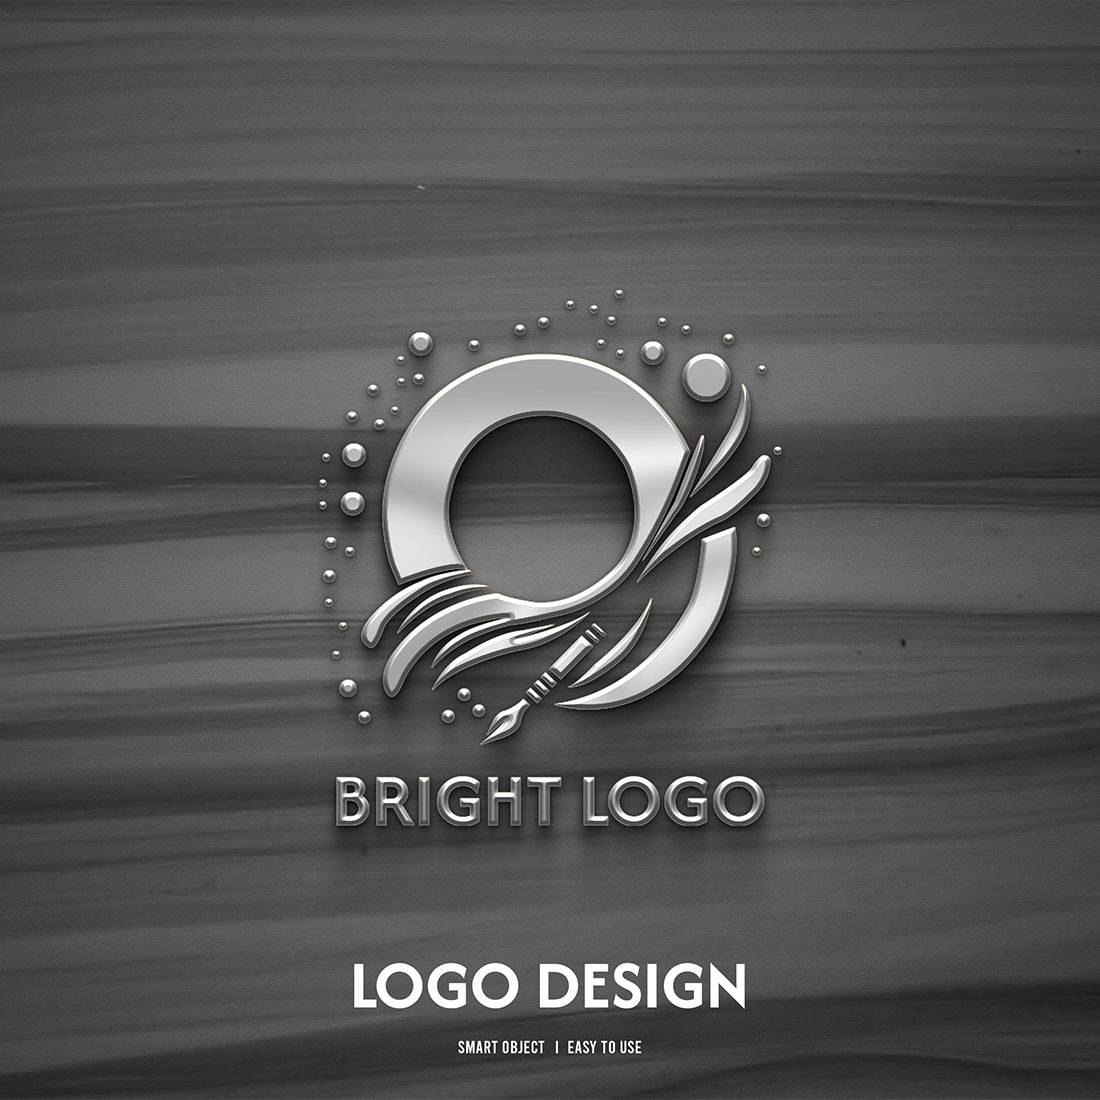 Sun shine bright logo design template 19604183 Vector Art at Vecteezy